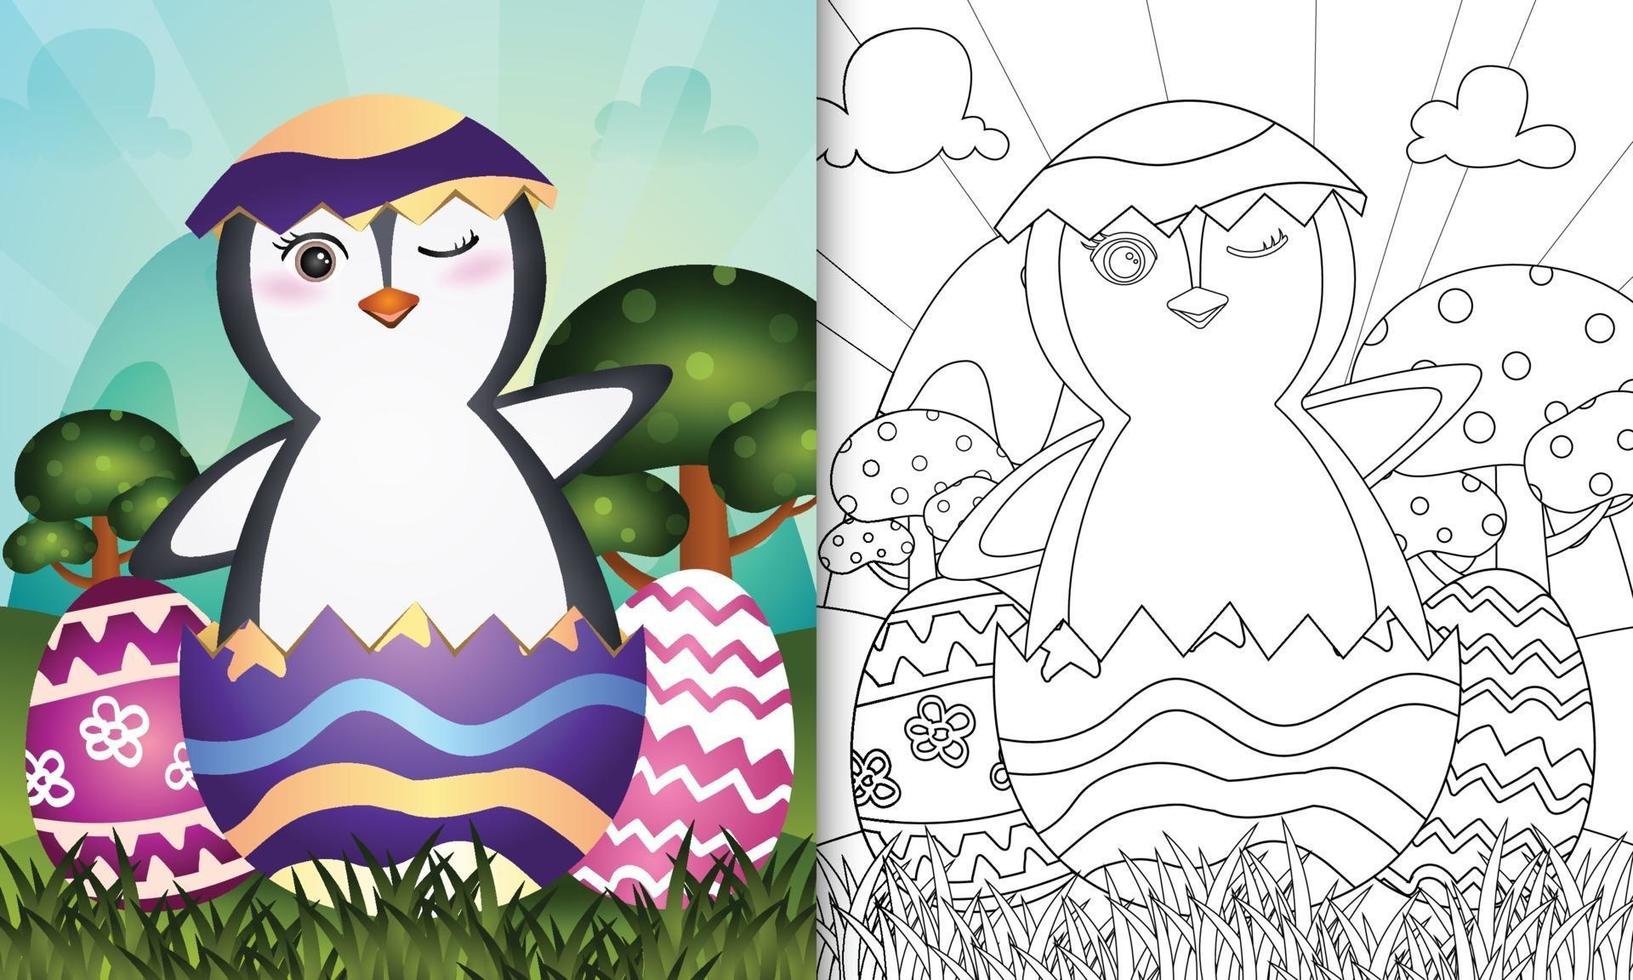 livro de colorir para crianças com tema feliz dia de páscoa com ilustração de um pinguim fofo no ovo vetor